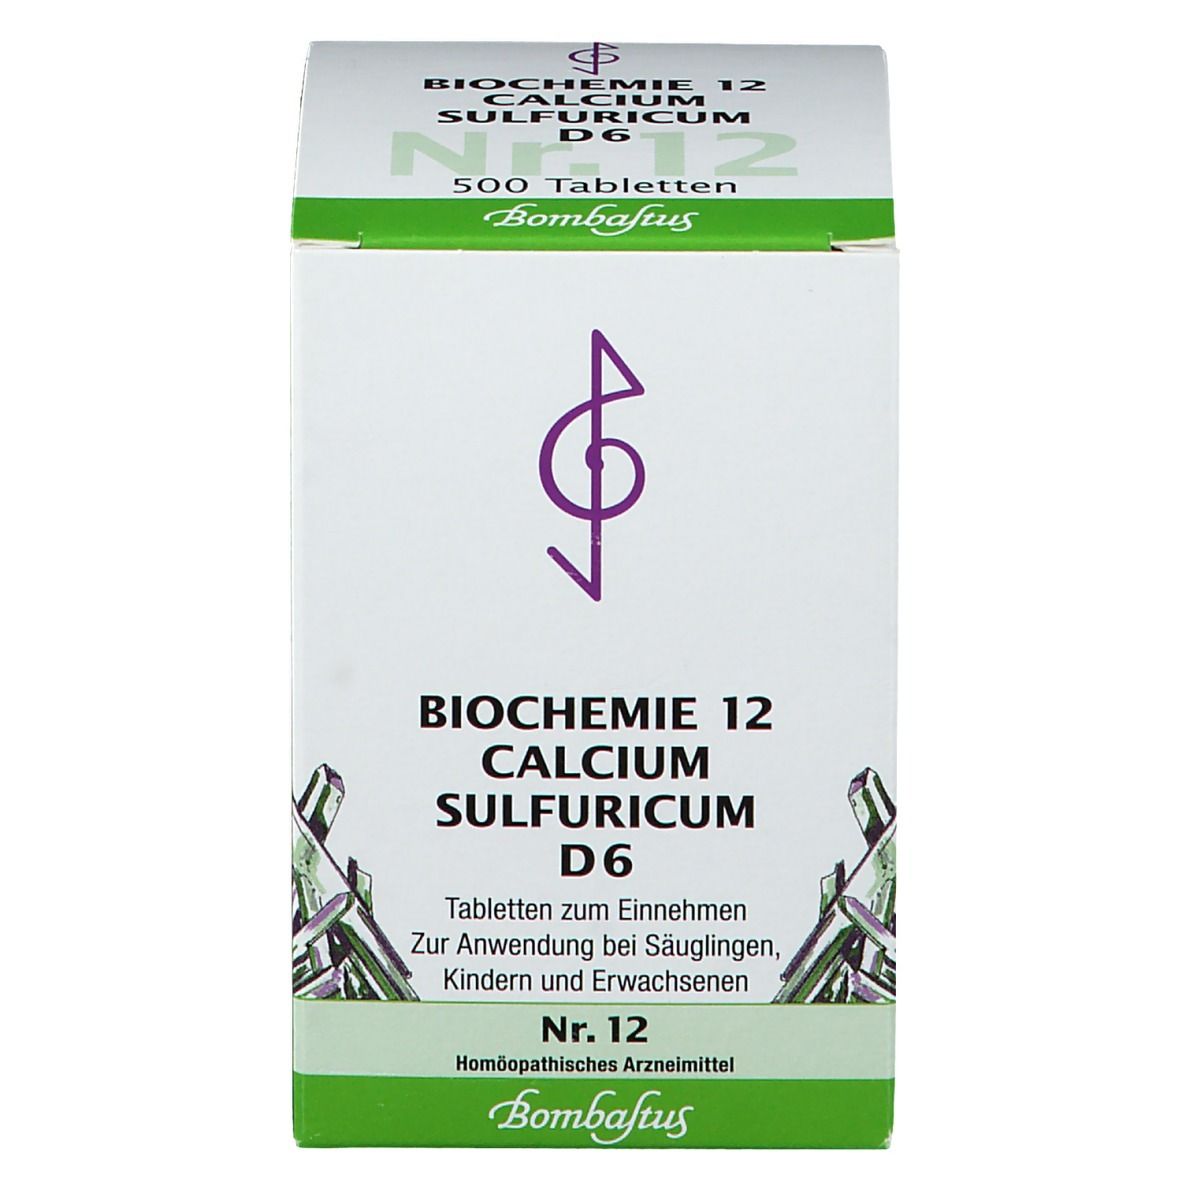 BIOCHEMIE 12 Calcium sulfuricum D6